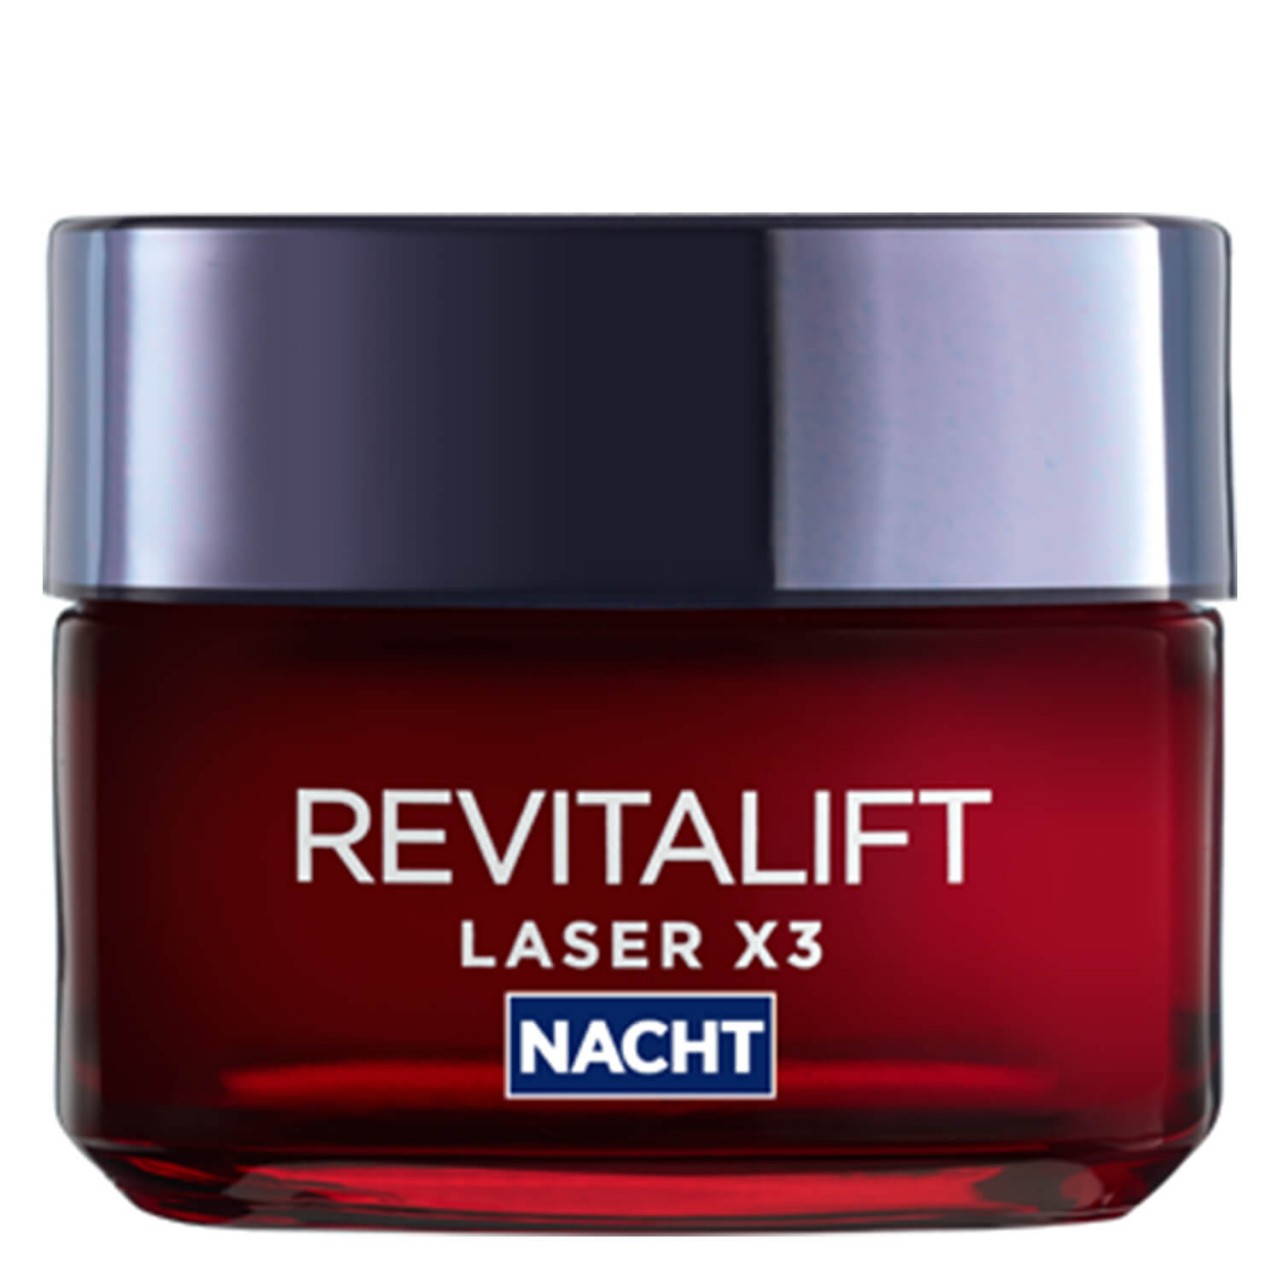 LOréal Skin Expert - Revitalift Laser X3 Nachtpflege von L'Oréal Paris